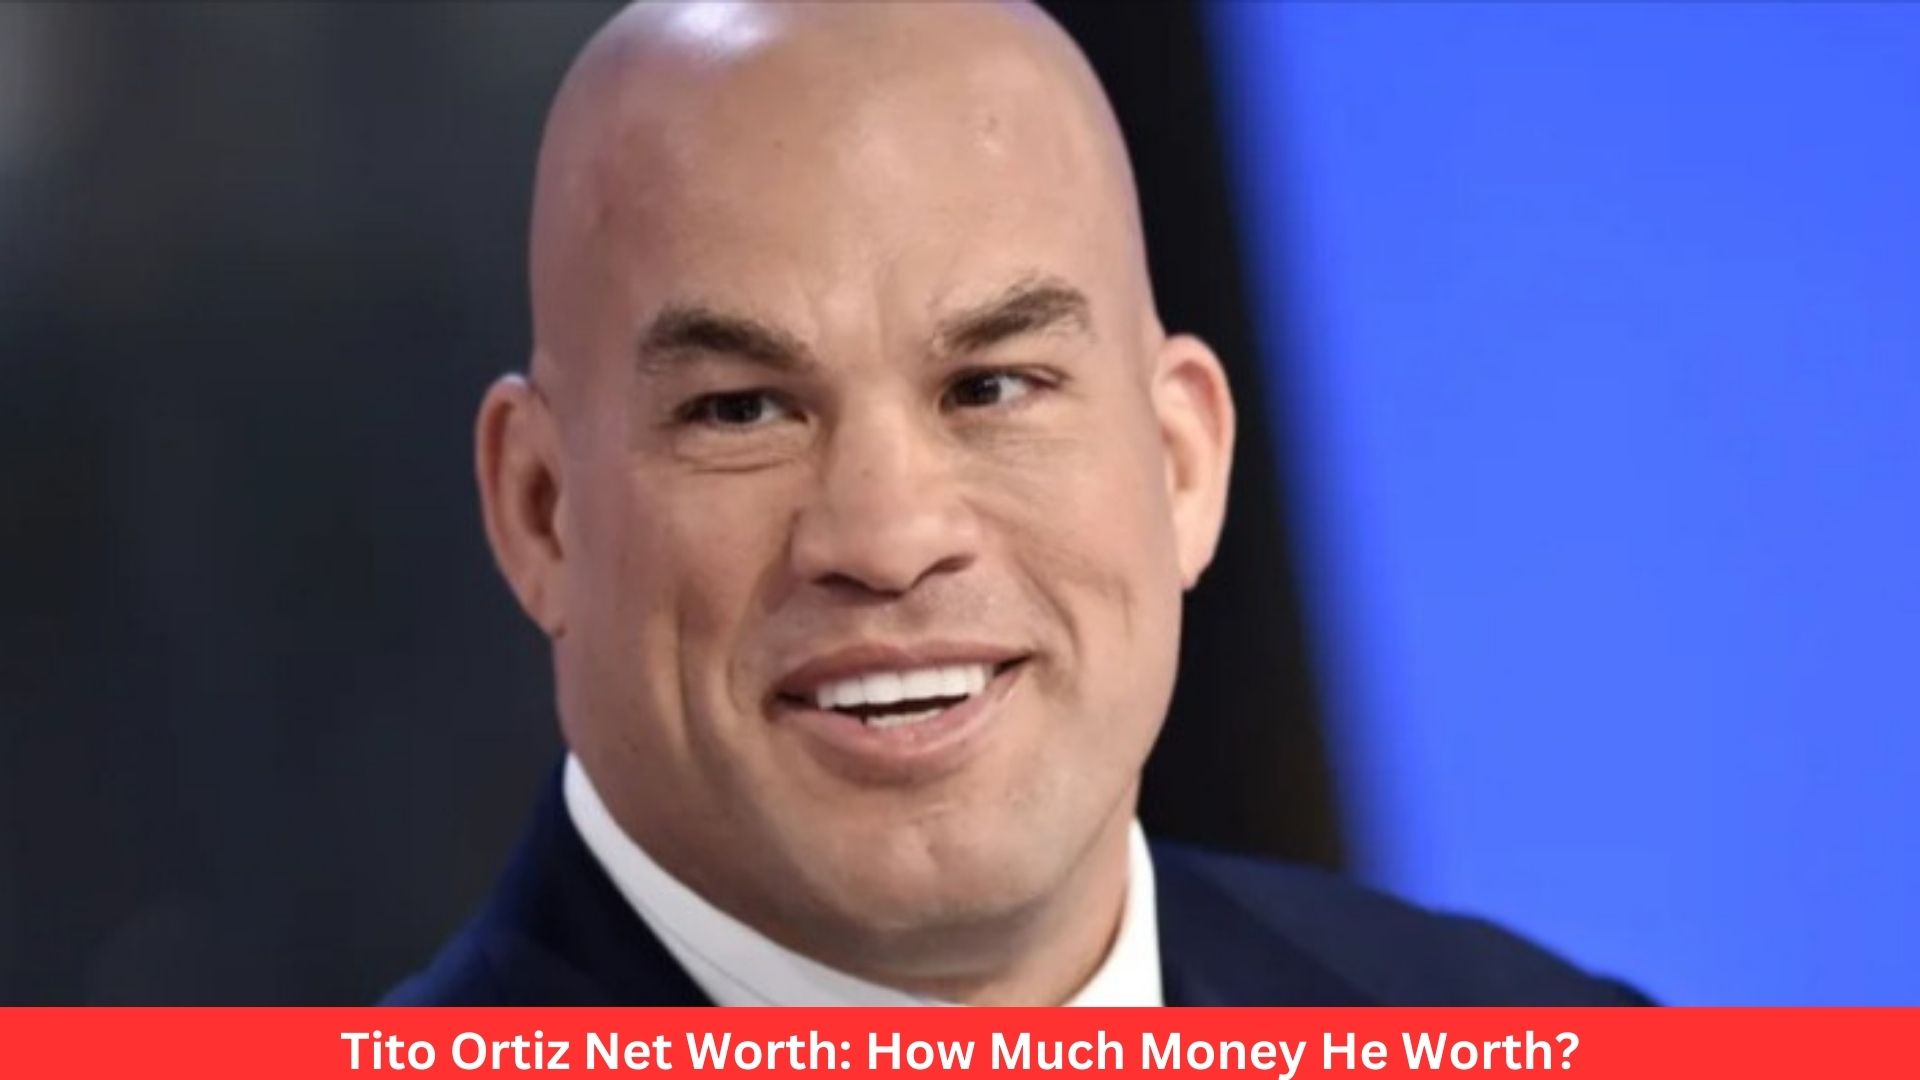 Tito Ortiz Net Worth: How Much Money He Worth?